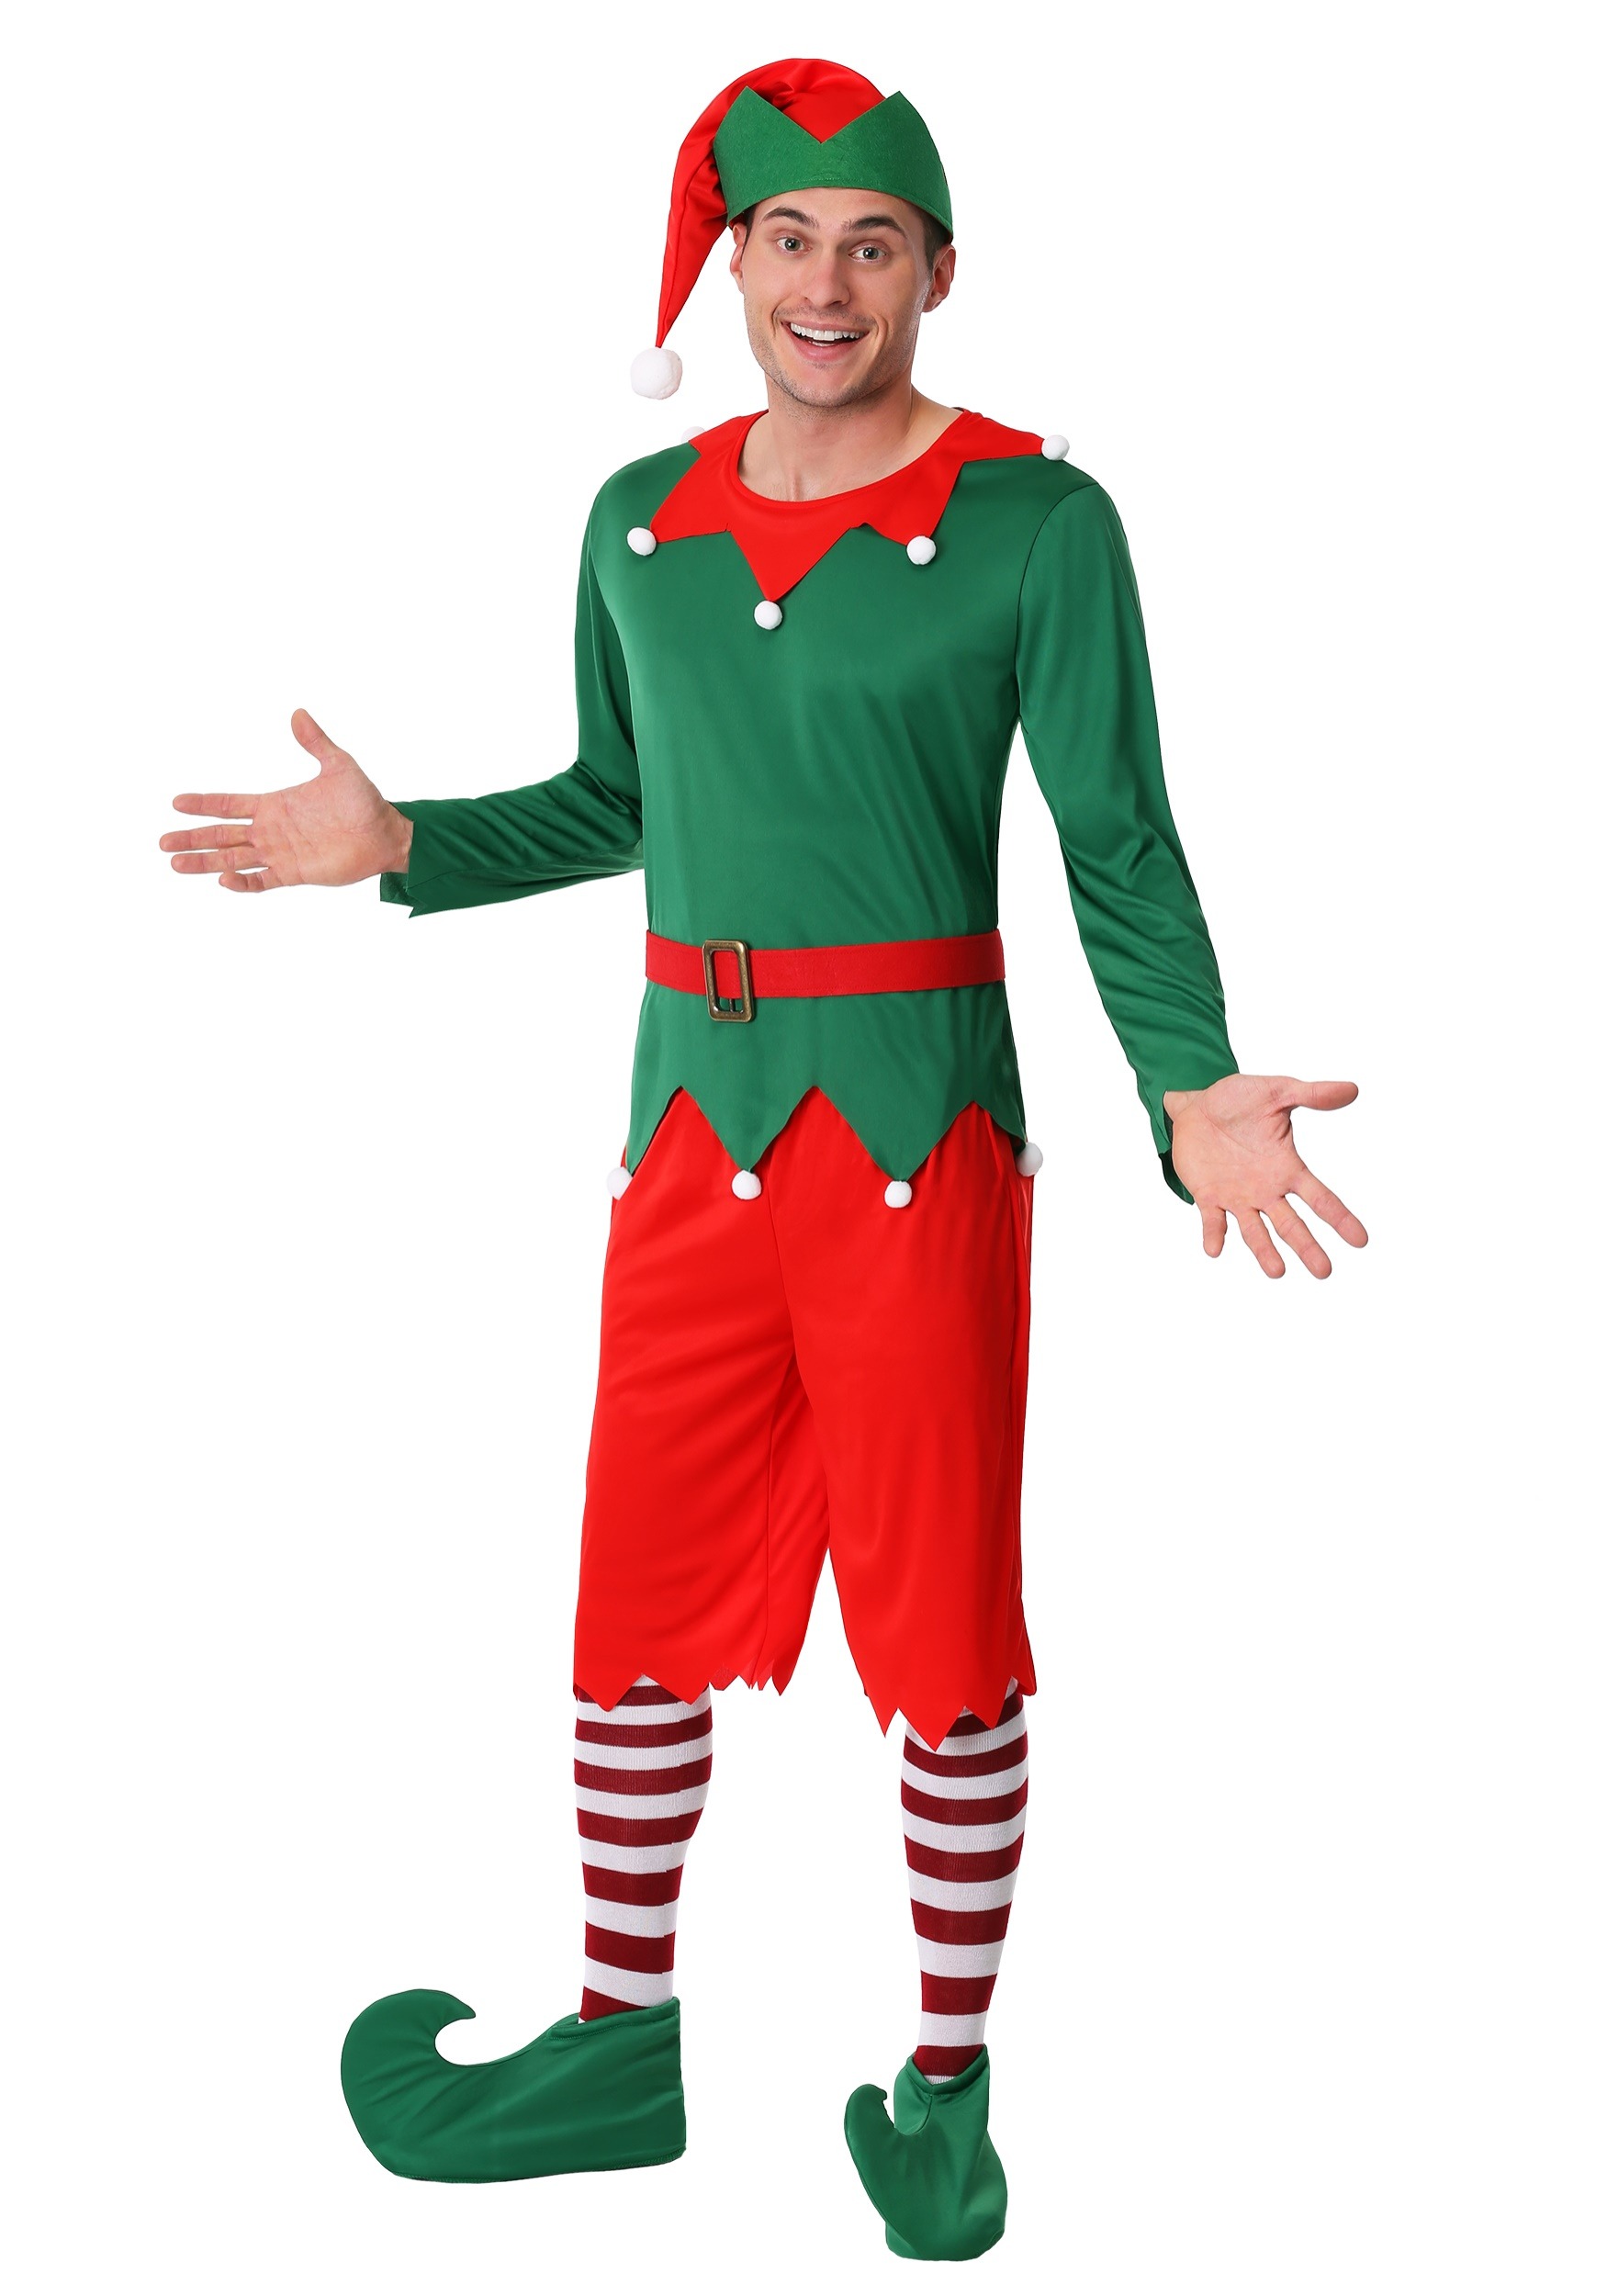 Santa's Helper Costume For Men